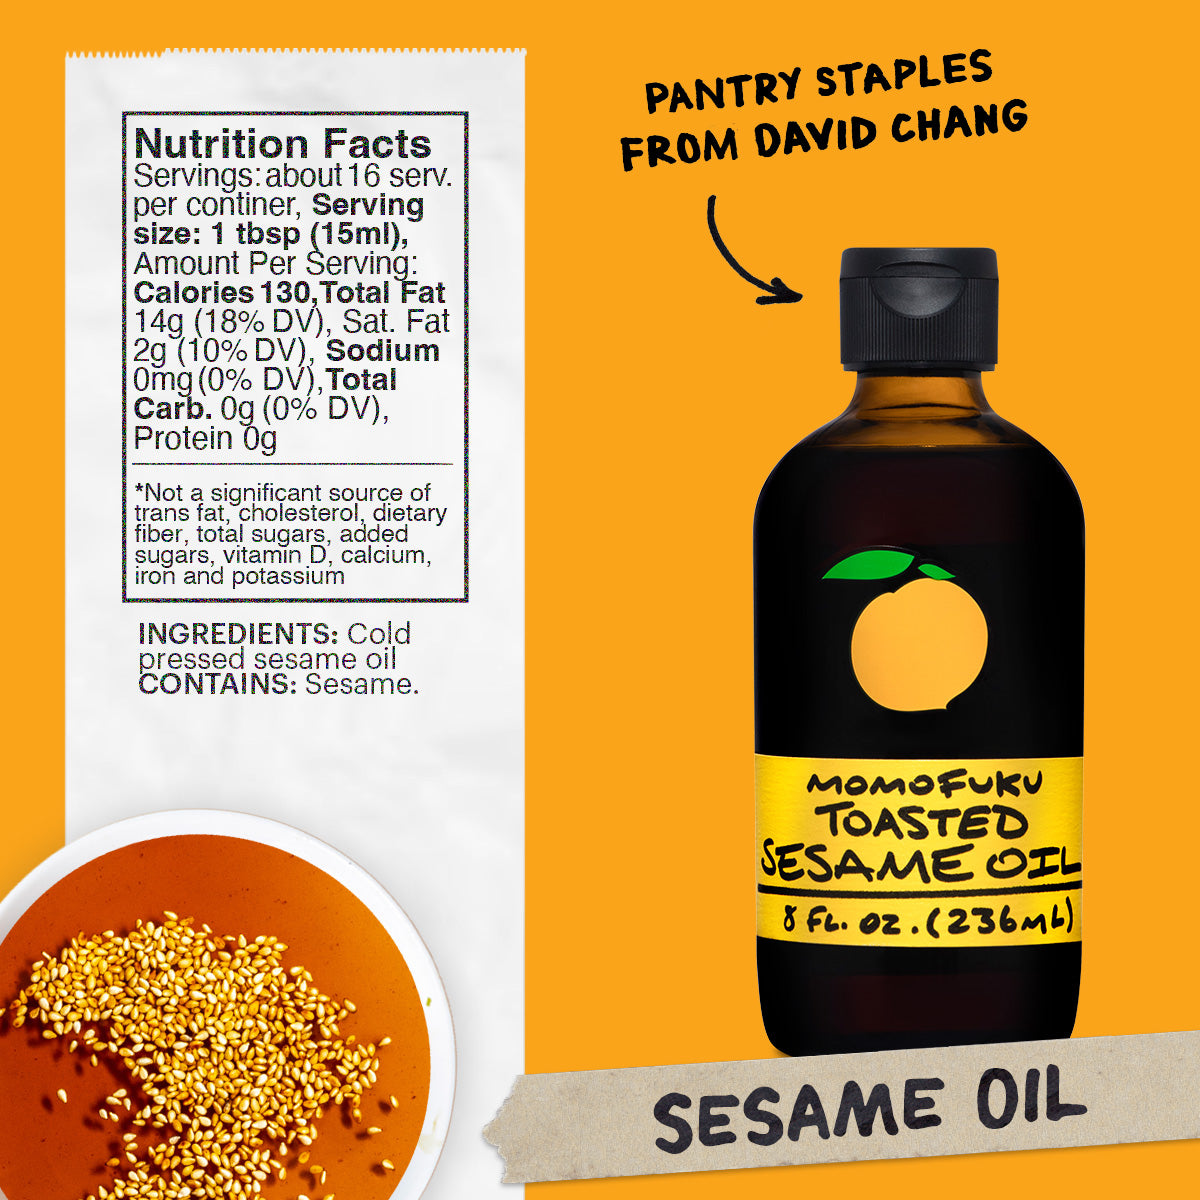 Toasted Sesame Oil